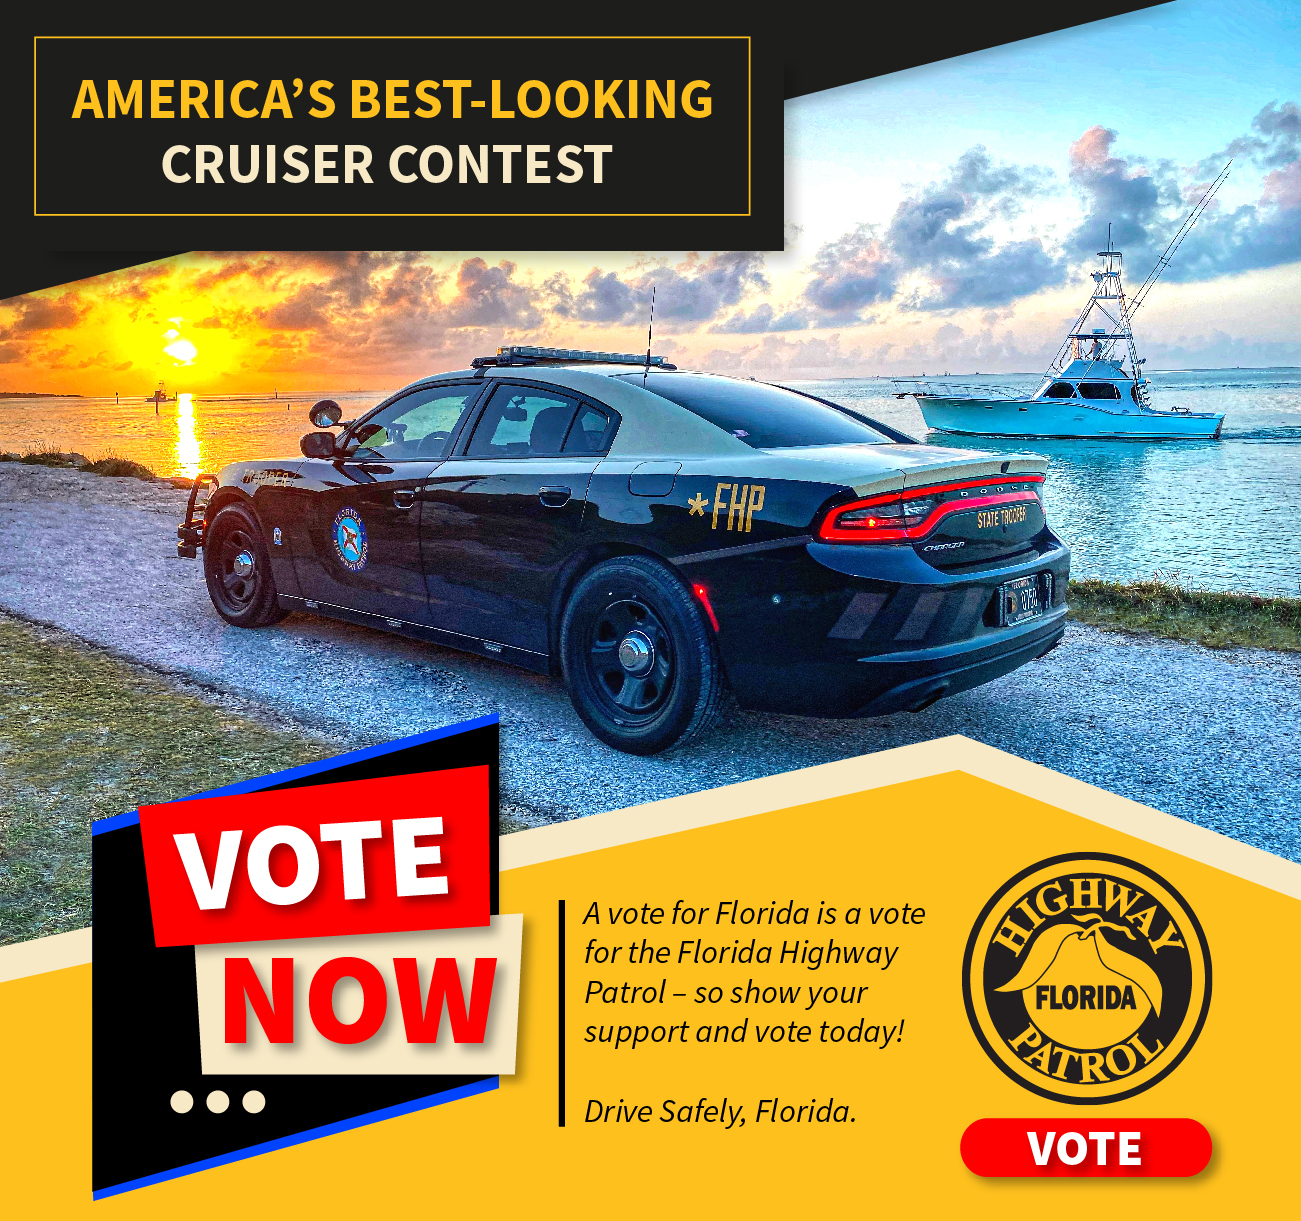 Americas Best Cruiser Contest